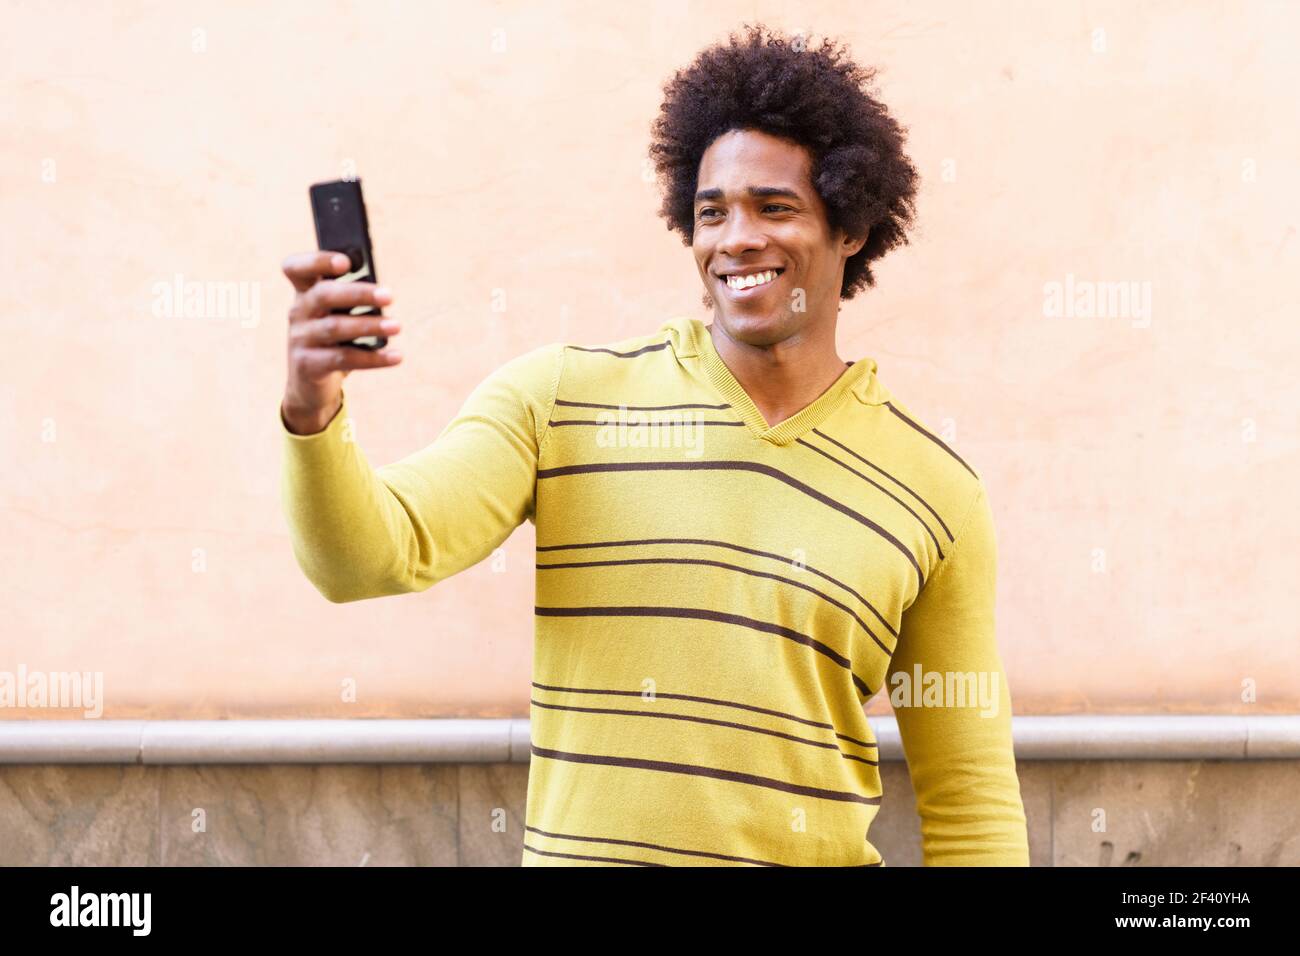 Homme noir avec cheveux afro et casque à l'aide d'un smartphone pour prendre des photos. Homme noir avec cheveux afro et casque à l'aide d'un smartphone. Banque D'Images